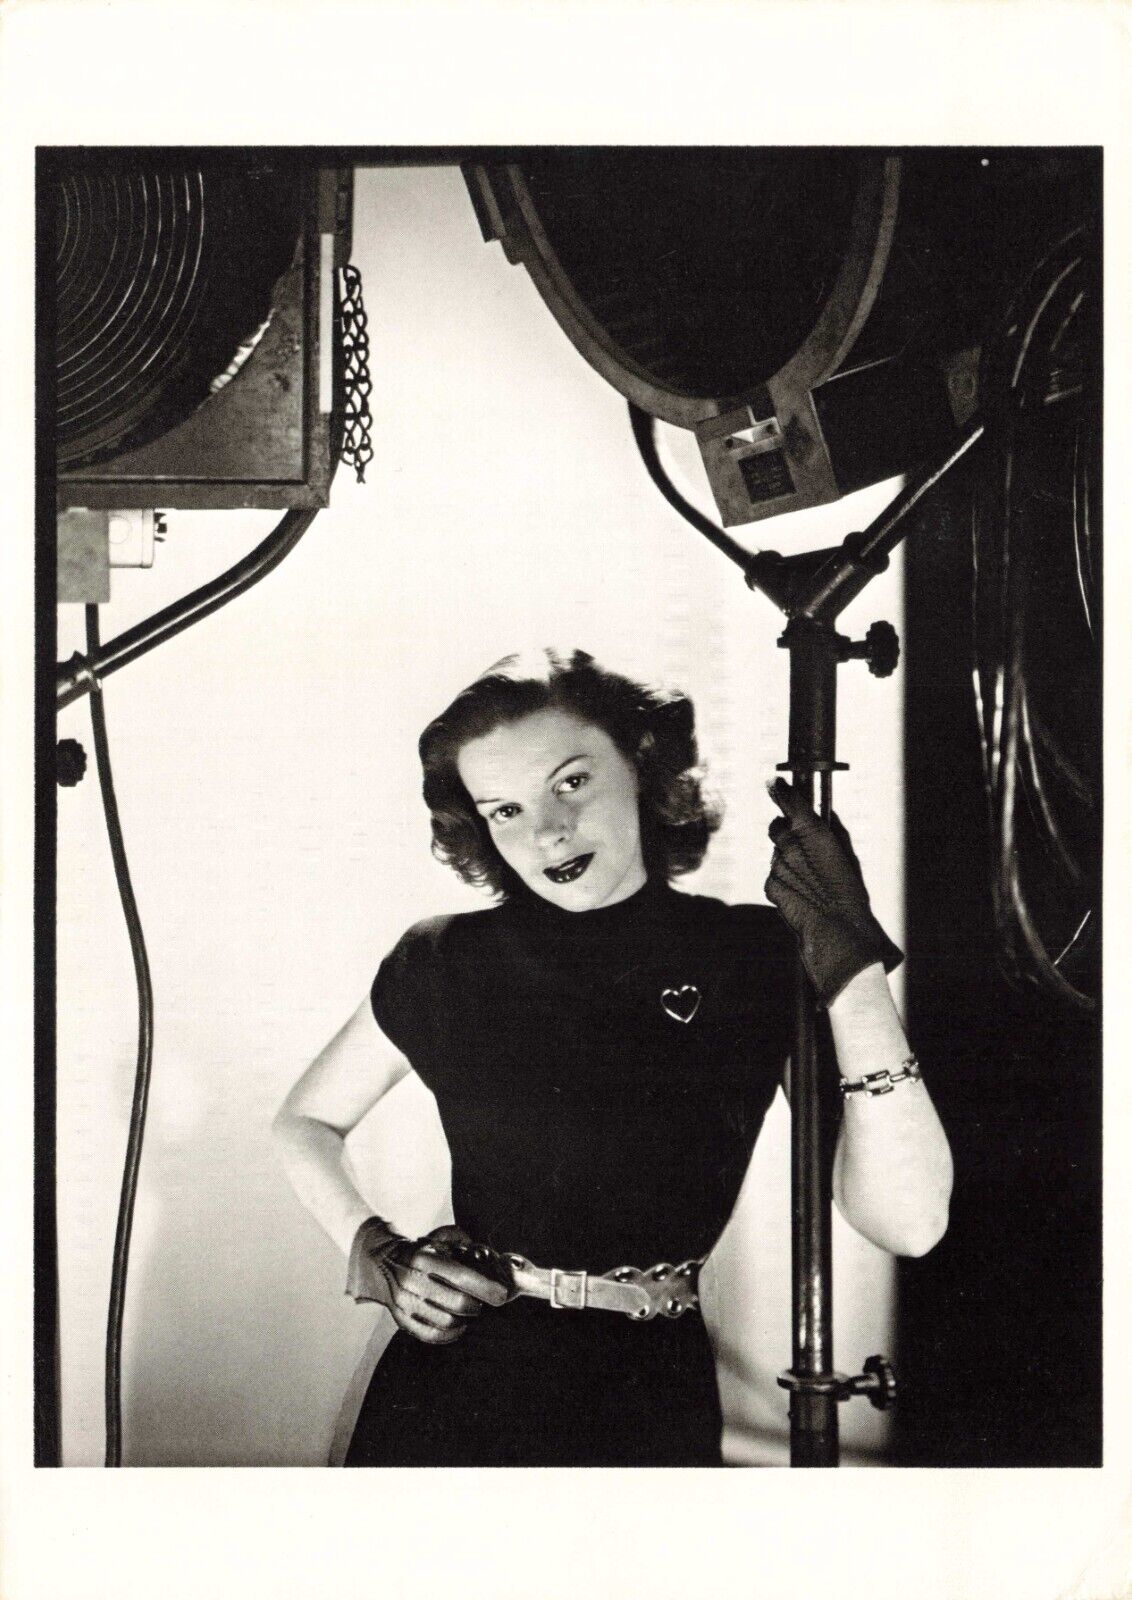 Postcard Judy Garland, A Star is Born, 1955, by George Hoyningen-Huene